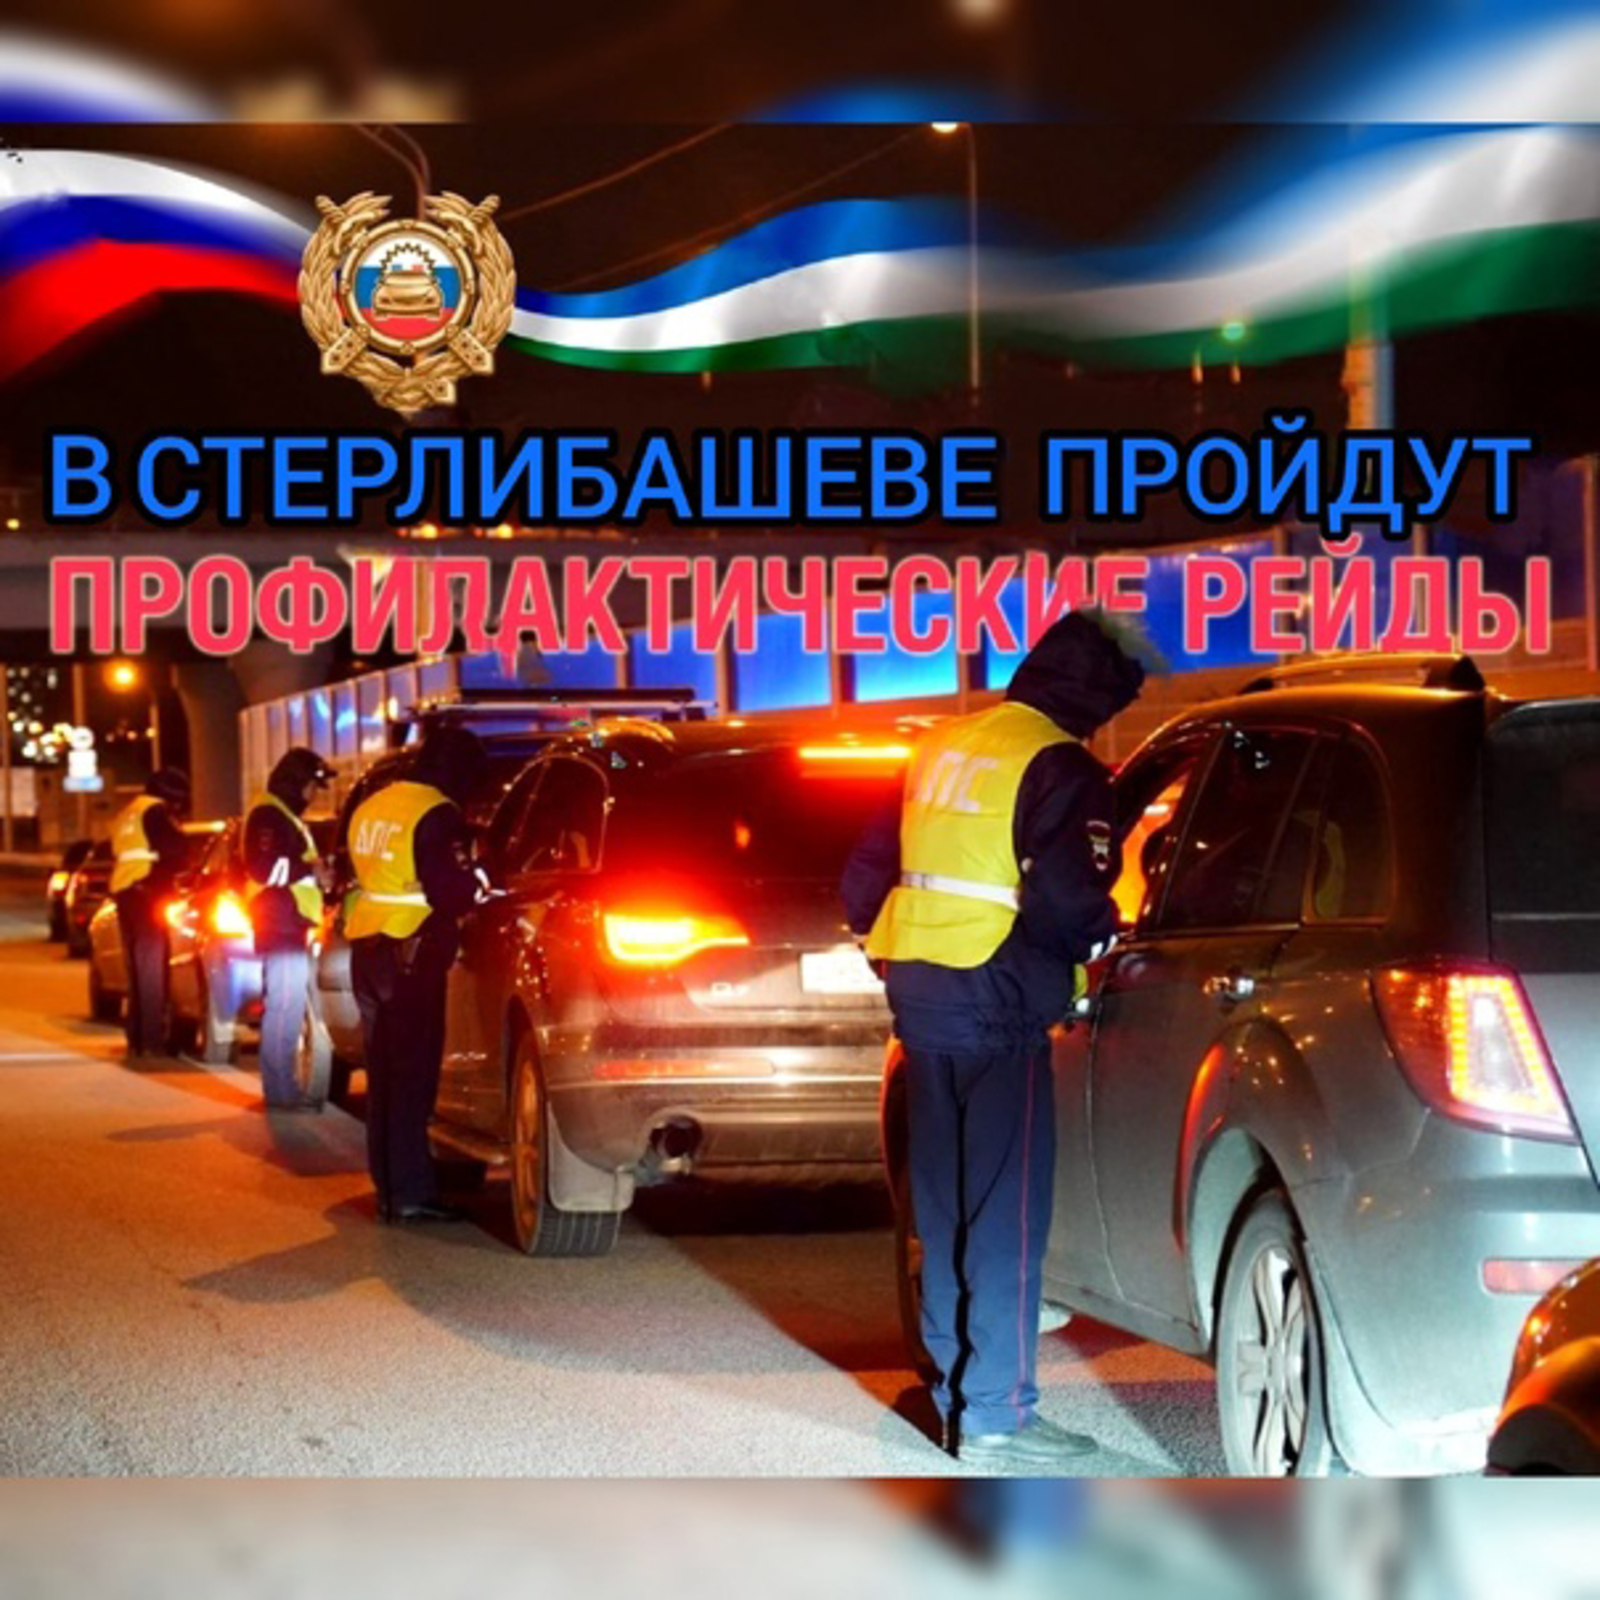 Сотрудники ГИБДД будут выявлять пьяных водителей на дорогах Стерлибашевского района 14 октября